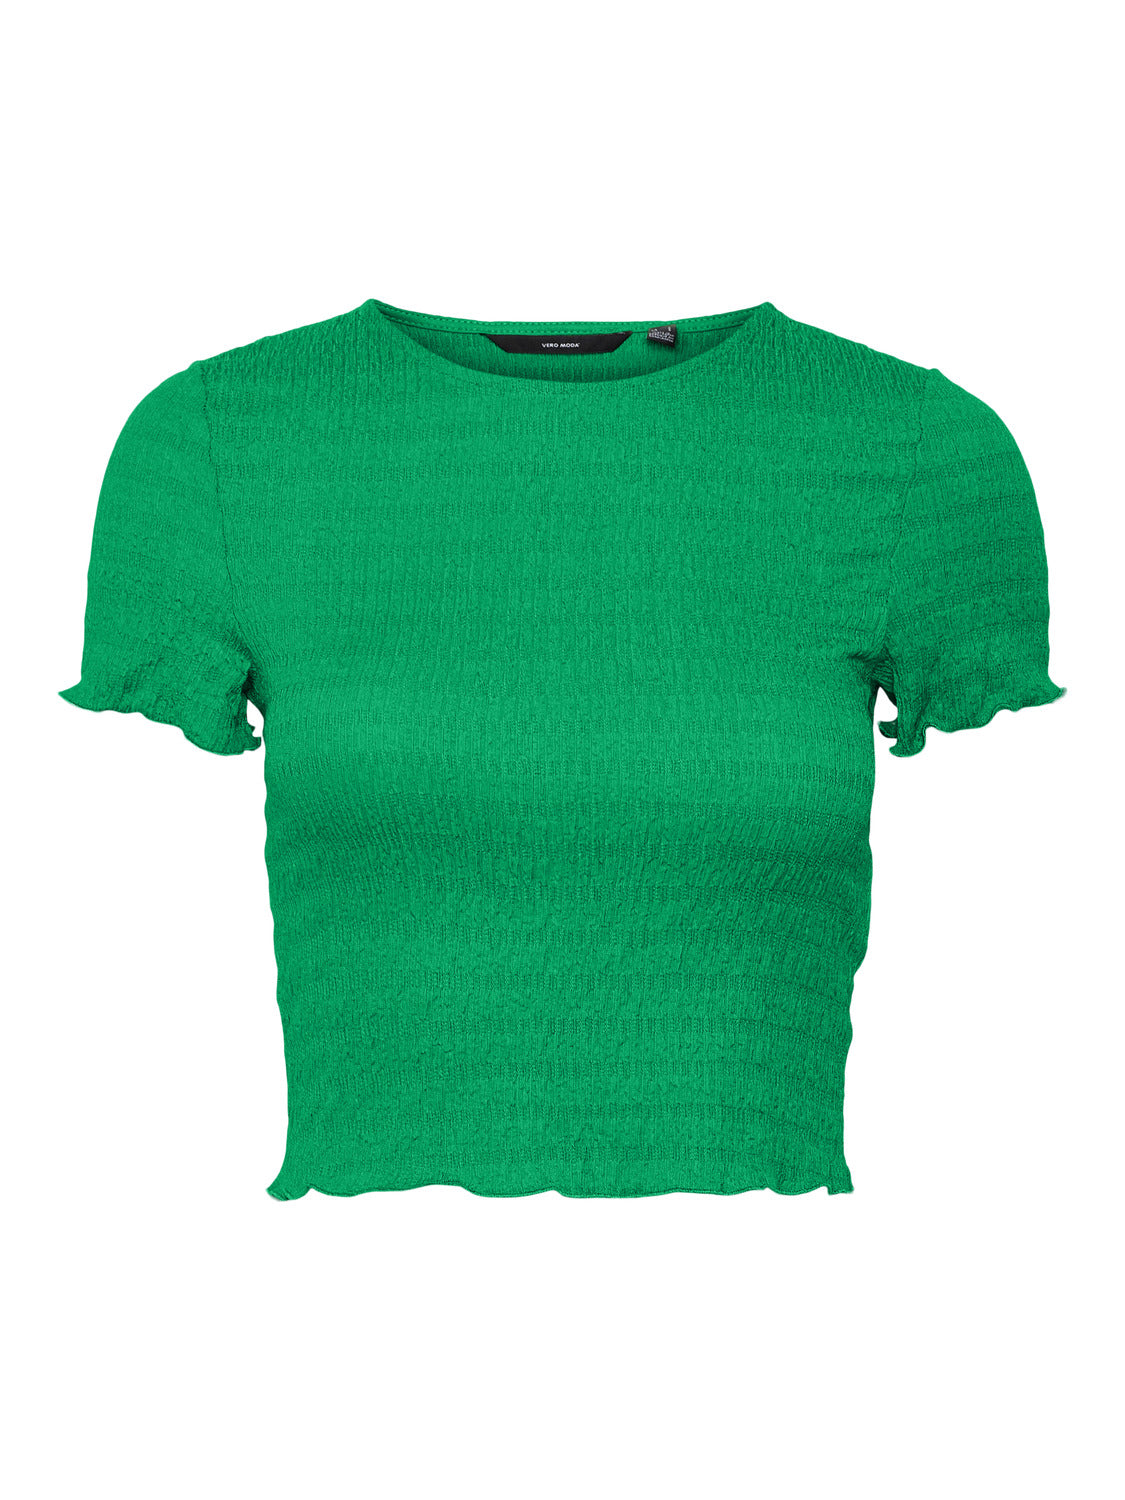 VMNYNNE T-Shirts & Tops - Bright Green